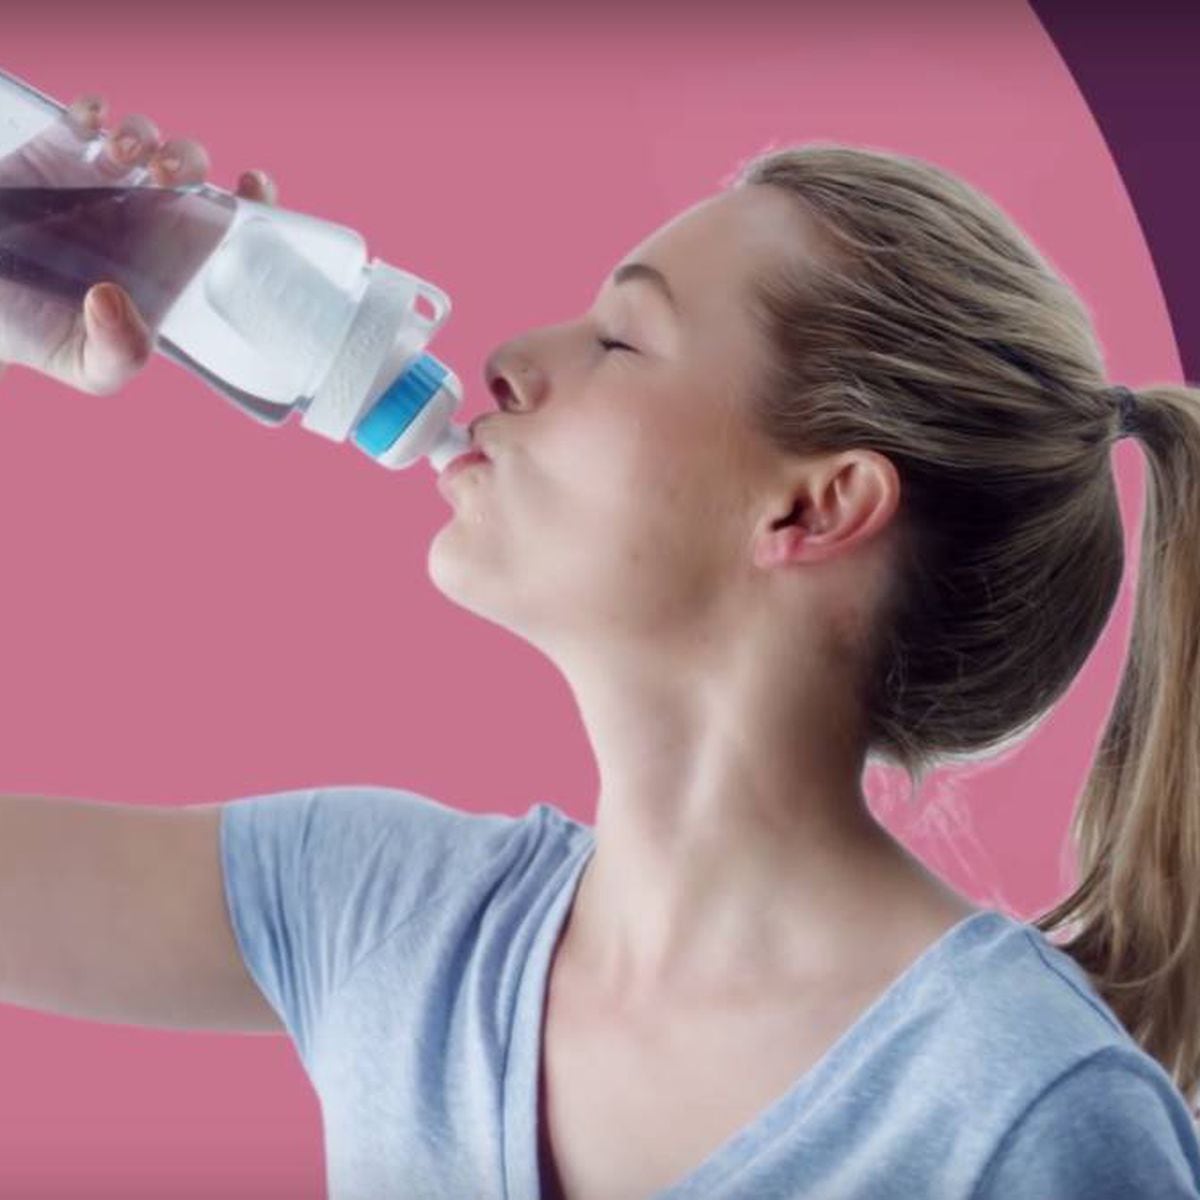 Cirkul, la botella mágica que cambia el sabor del agua - Meristation